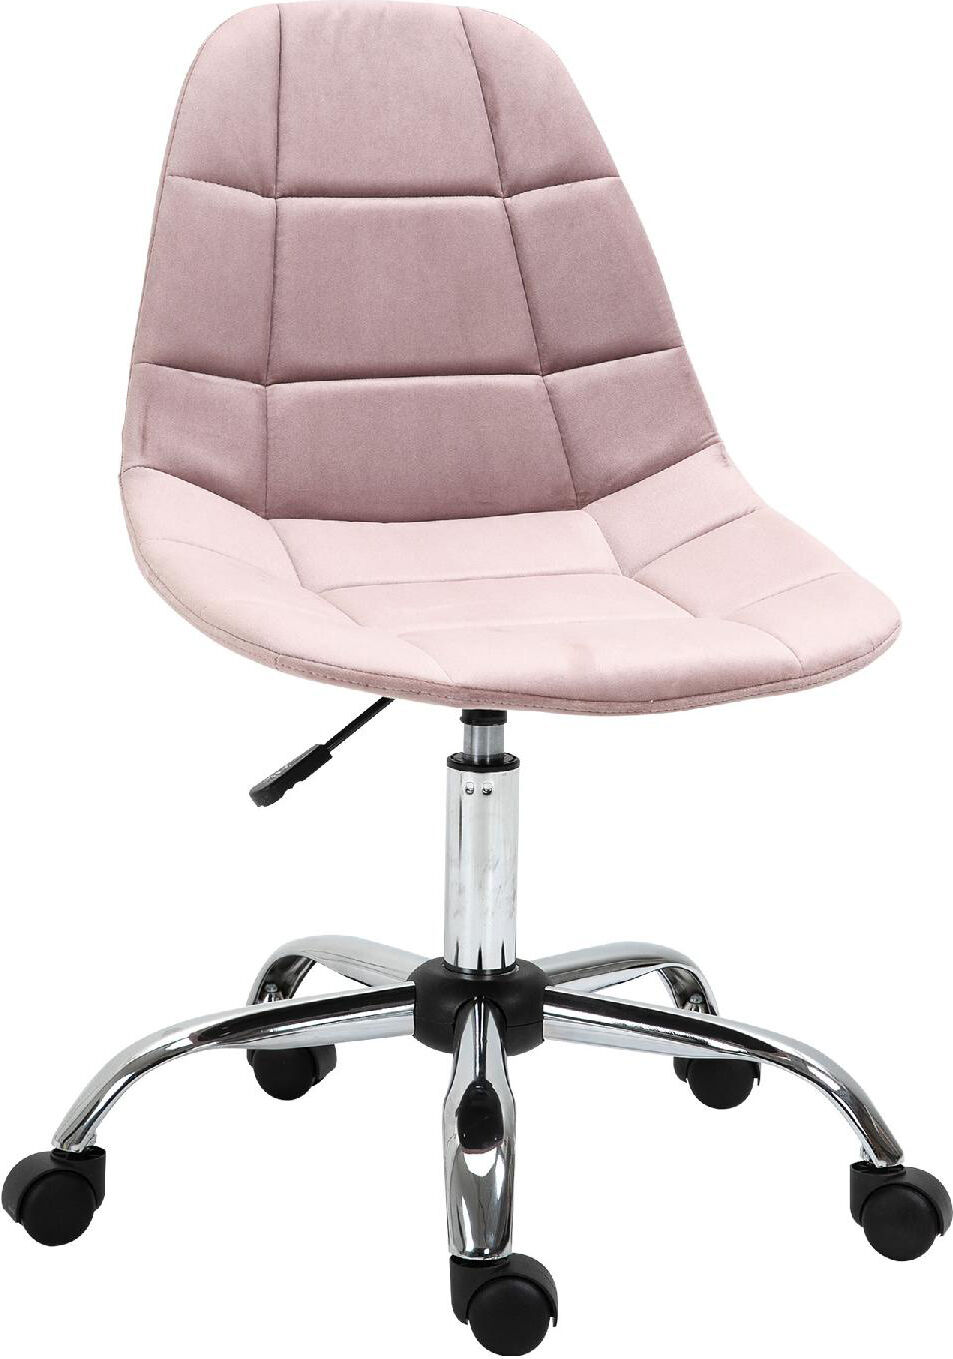 icon space 921366pk sedia ergonomica ufficio sedia da scrivania con rotelle girevole e regolabile in altezza colore rosa - 921366pk